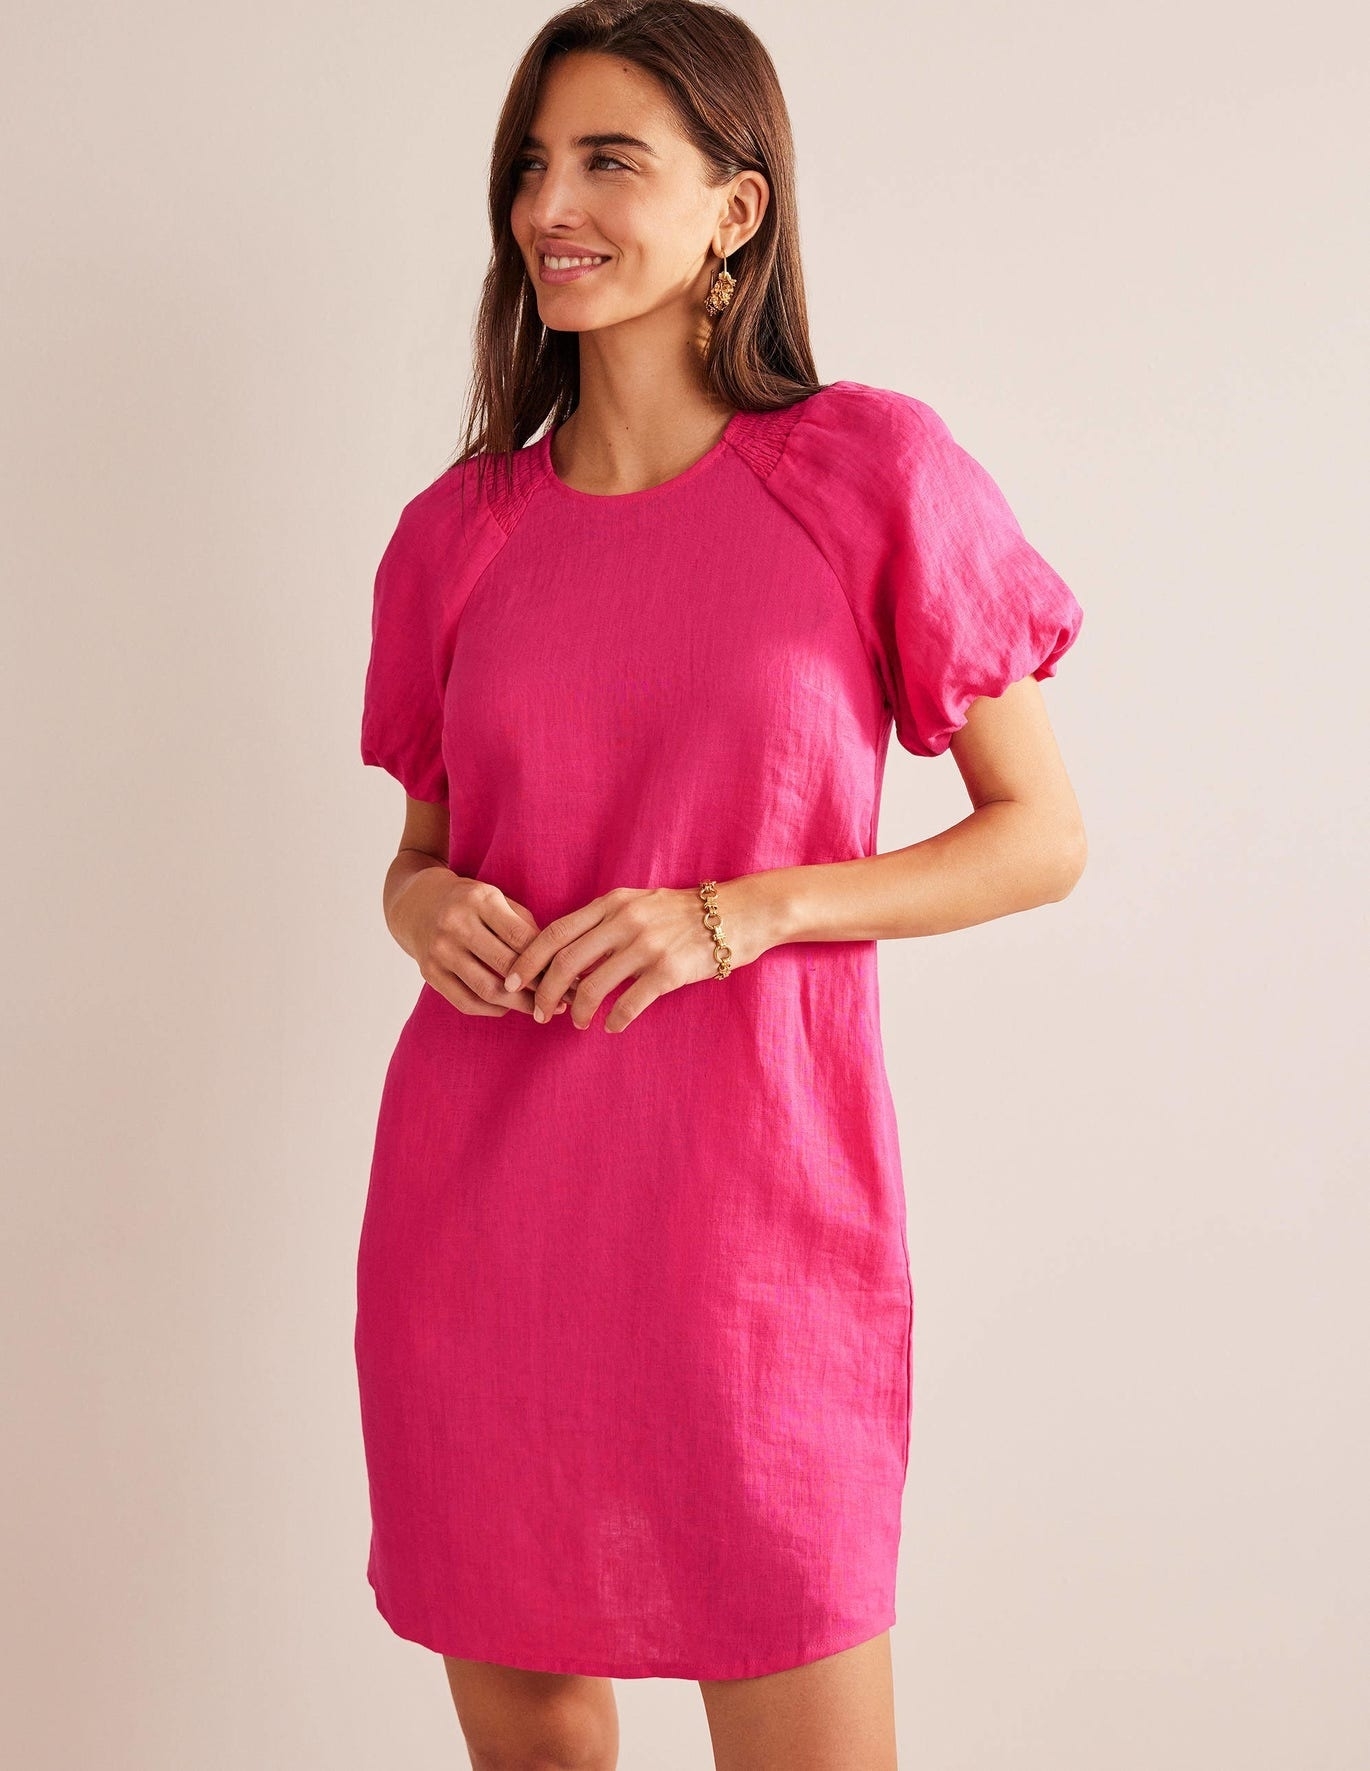 A model wearing a short pink dress.